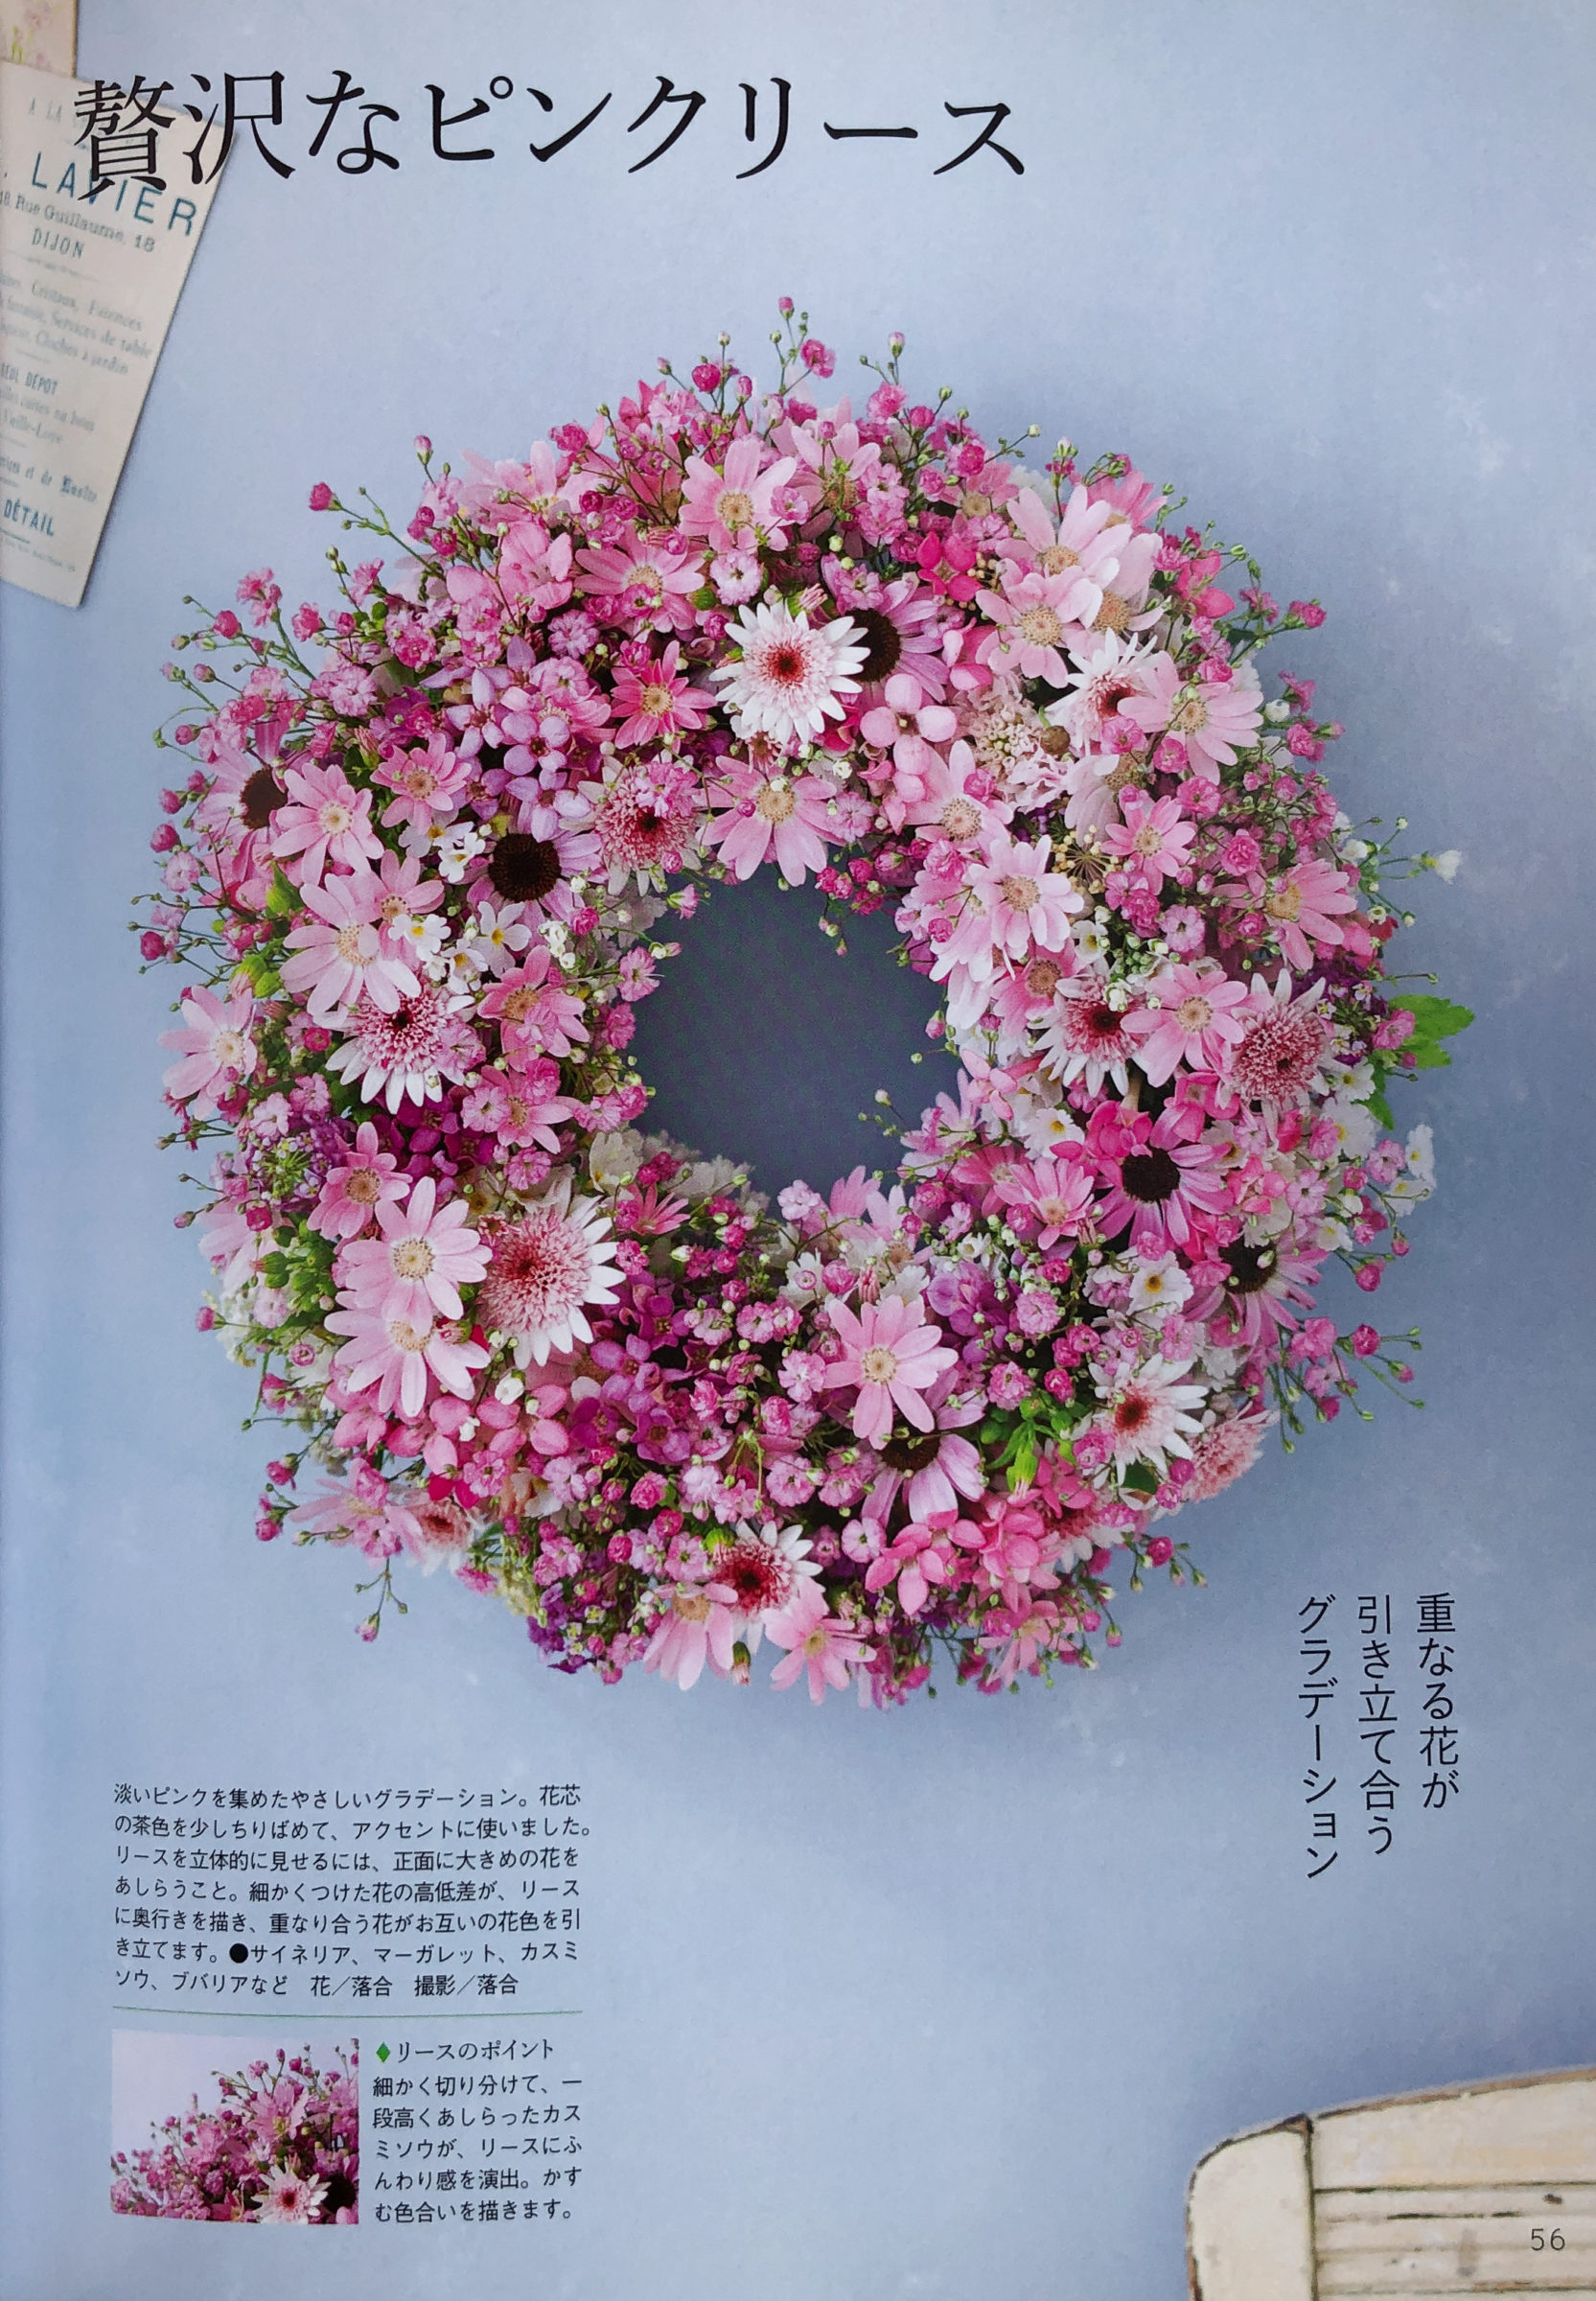 贅沢なピンクのリース P56淡いピンクの小花を集めたグラデーションリースです。 花・落合惠美　撮影・落合里美